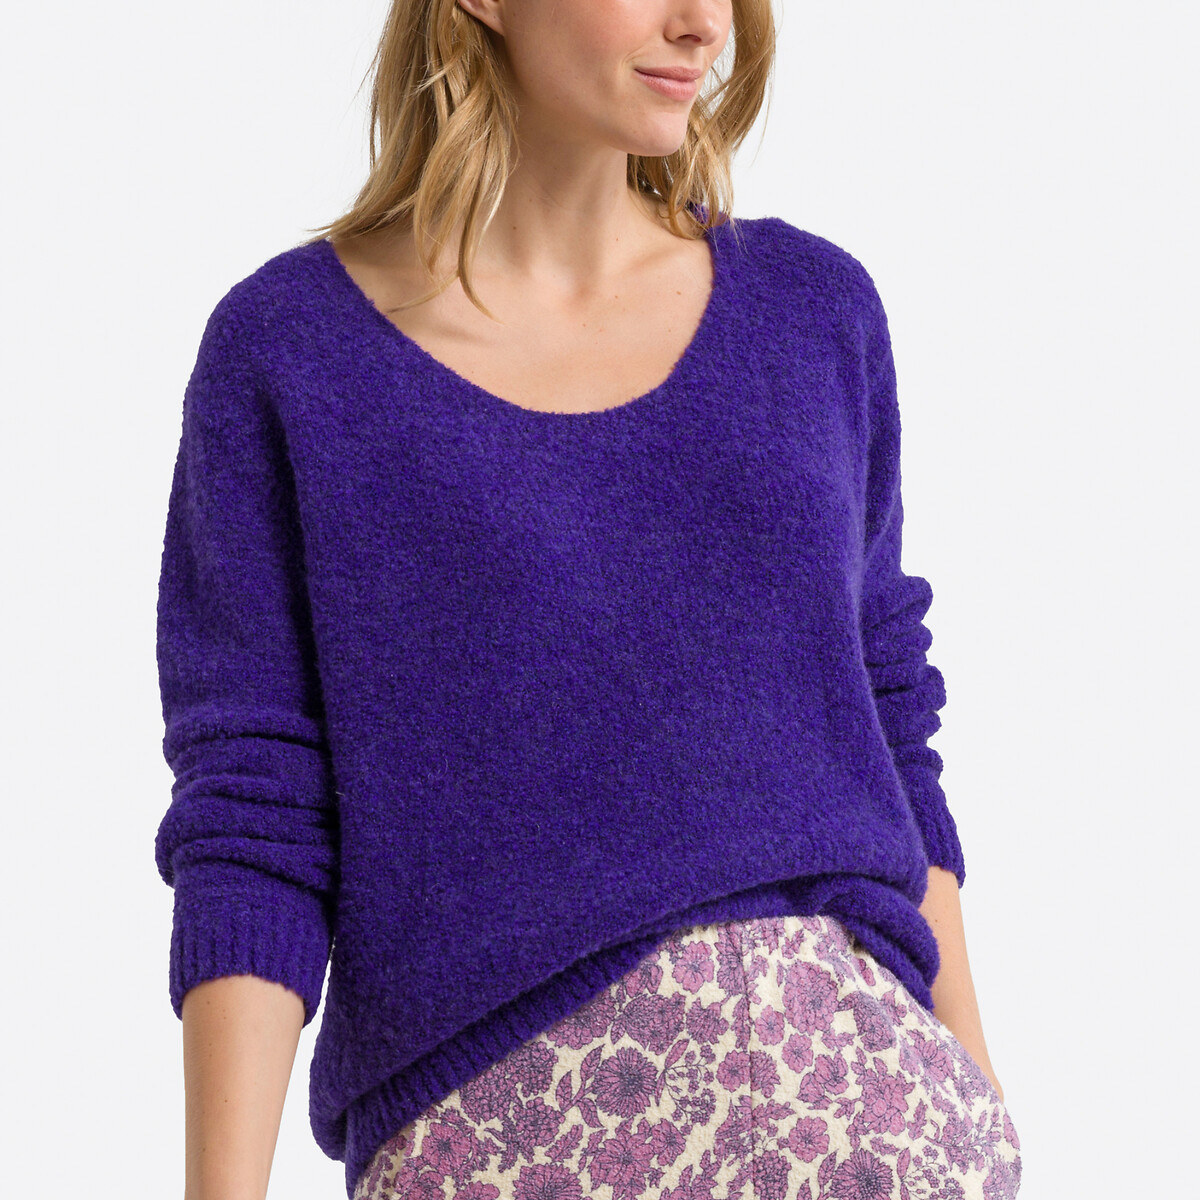 Пуловер объемный с длинными рукавами CIKOYA XS/S фиолетовый пуловер с v образным вырезом из рифленого трикотажа m бежевый